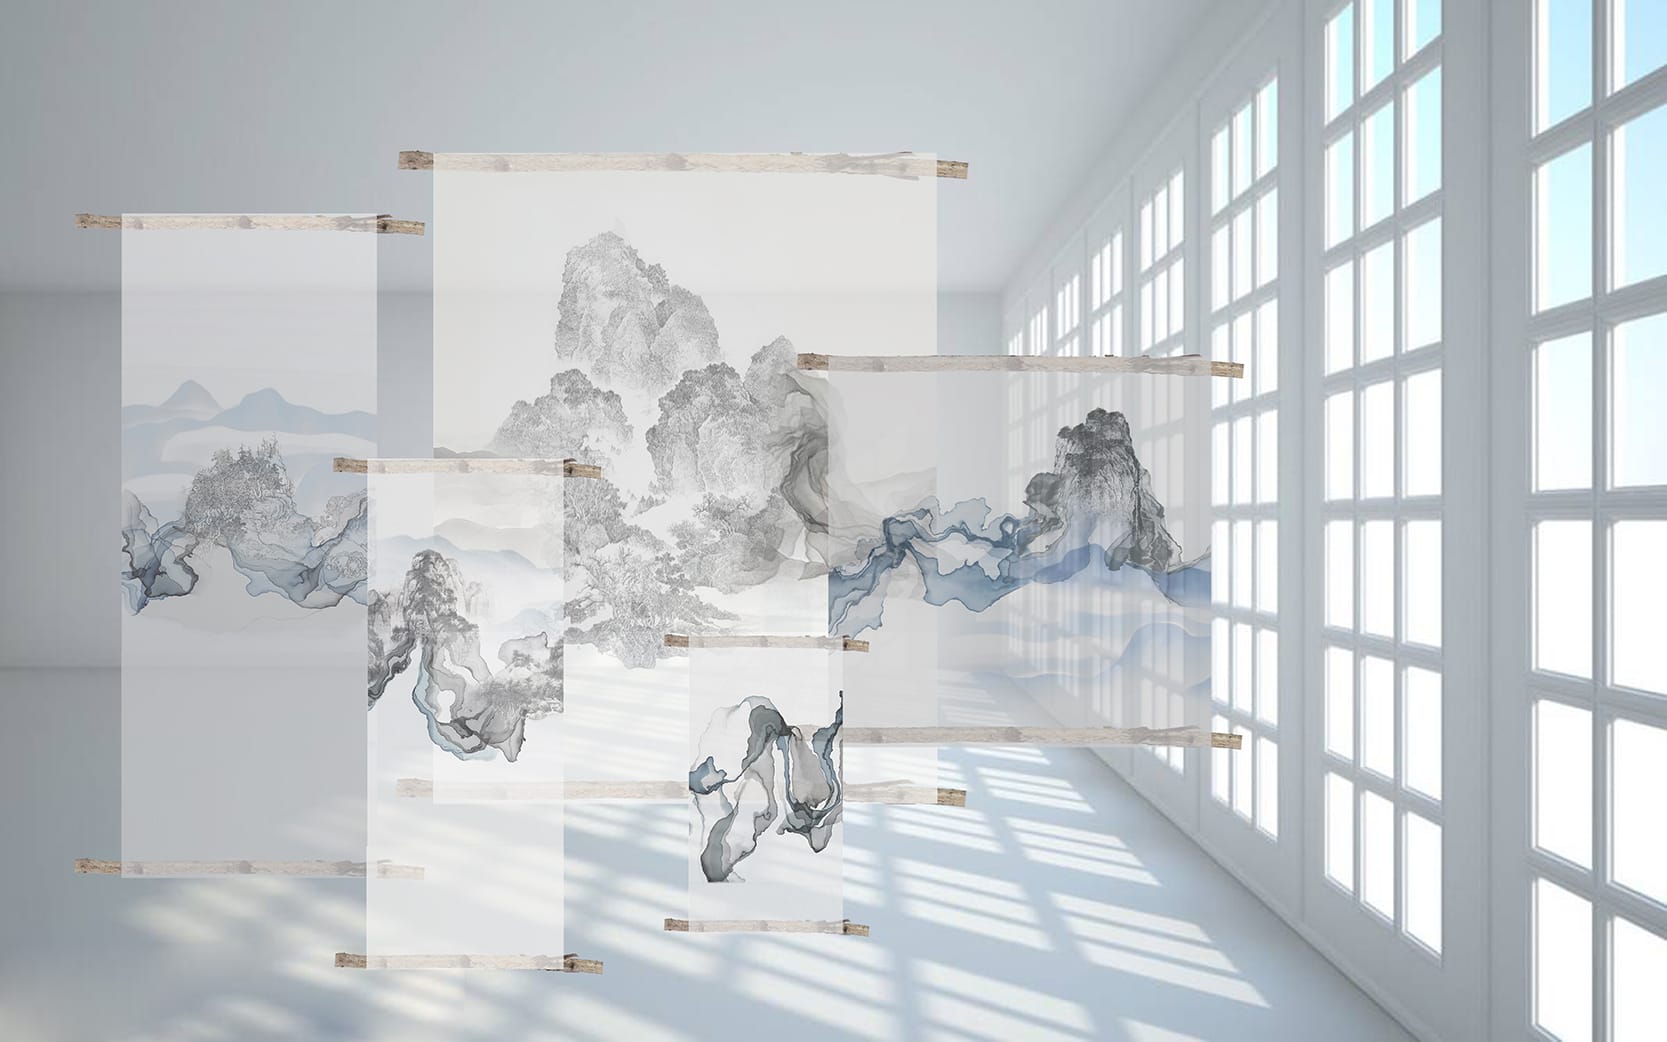 Museo del tessuto di prato presenta The Contemporary Chinese Fiber Art